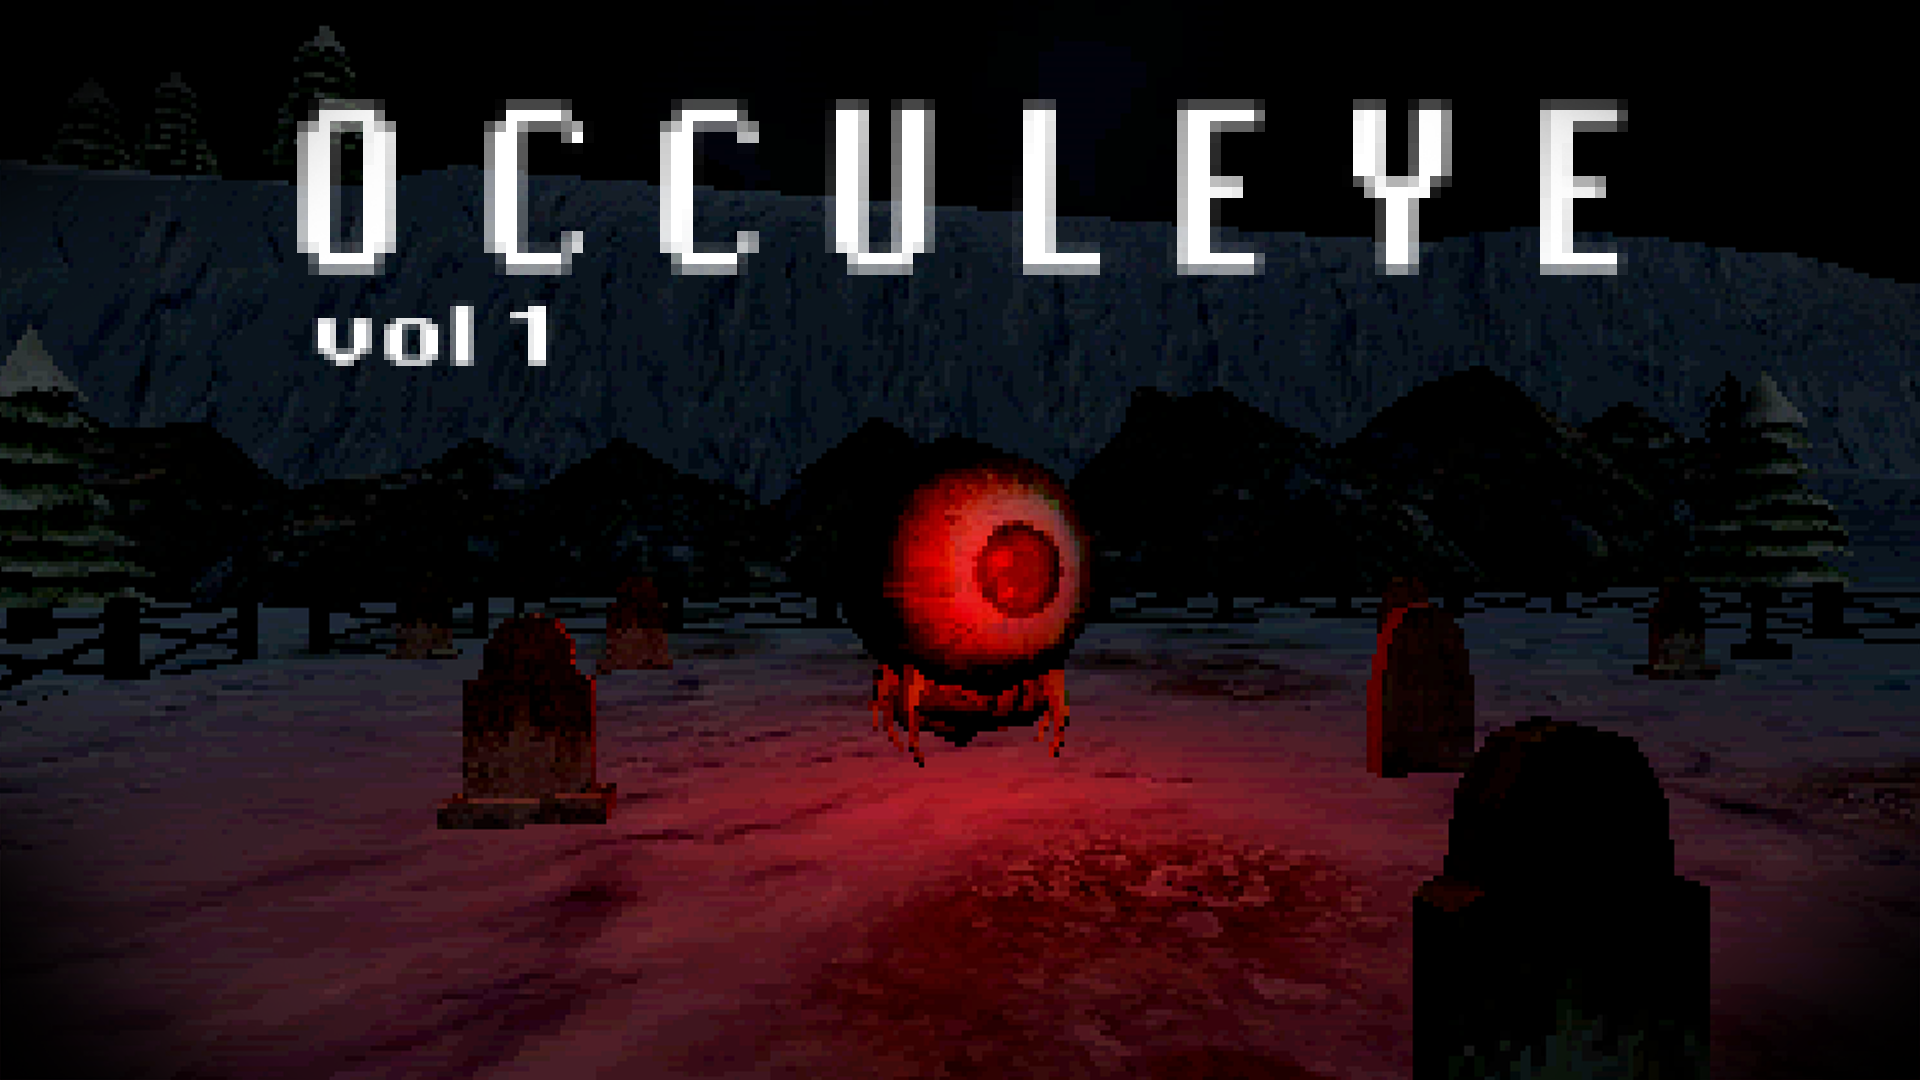 Occulye (Prototype)